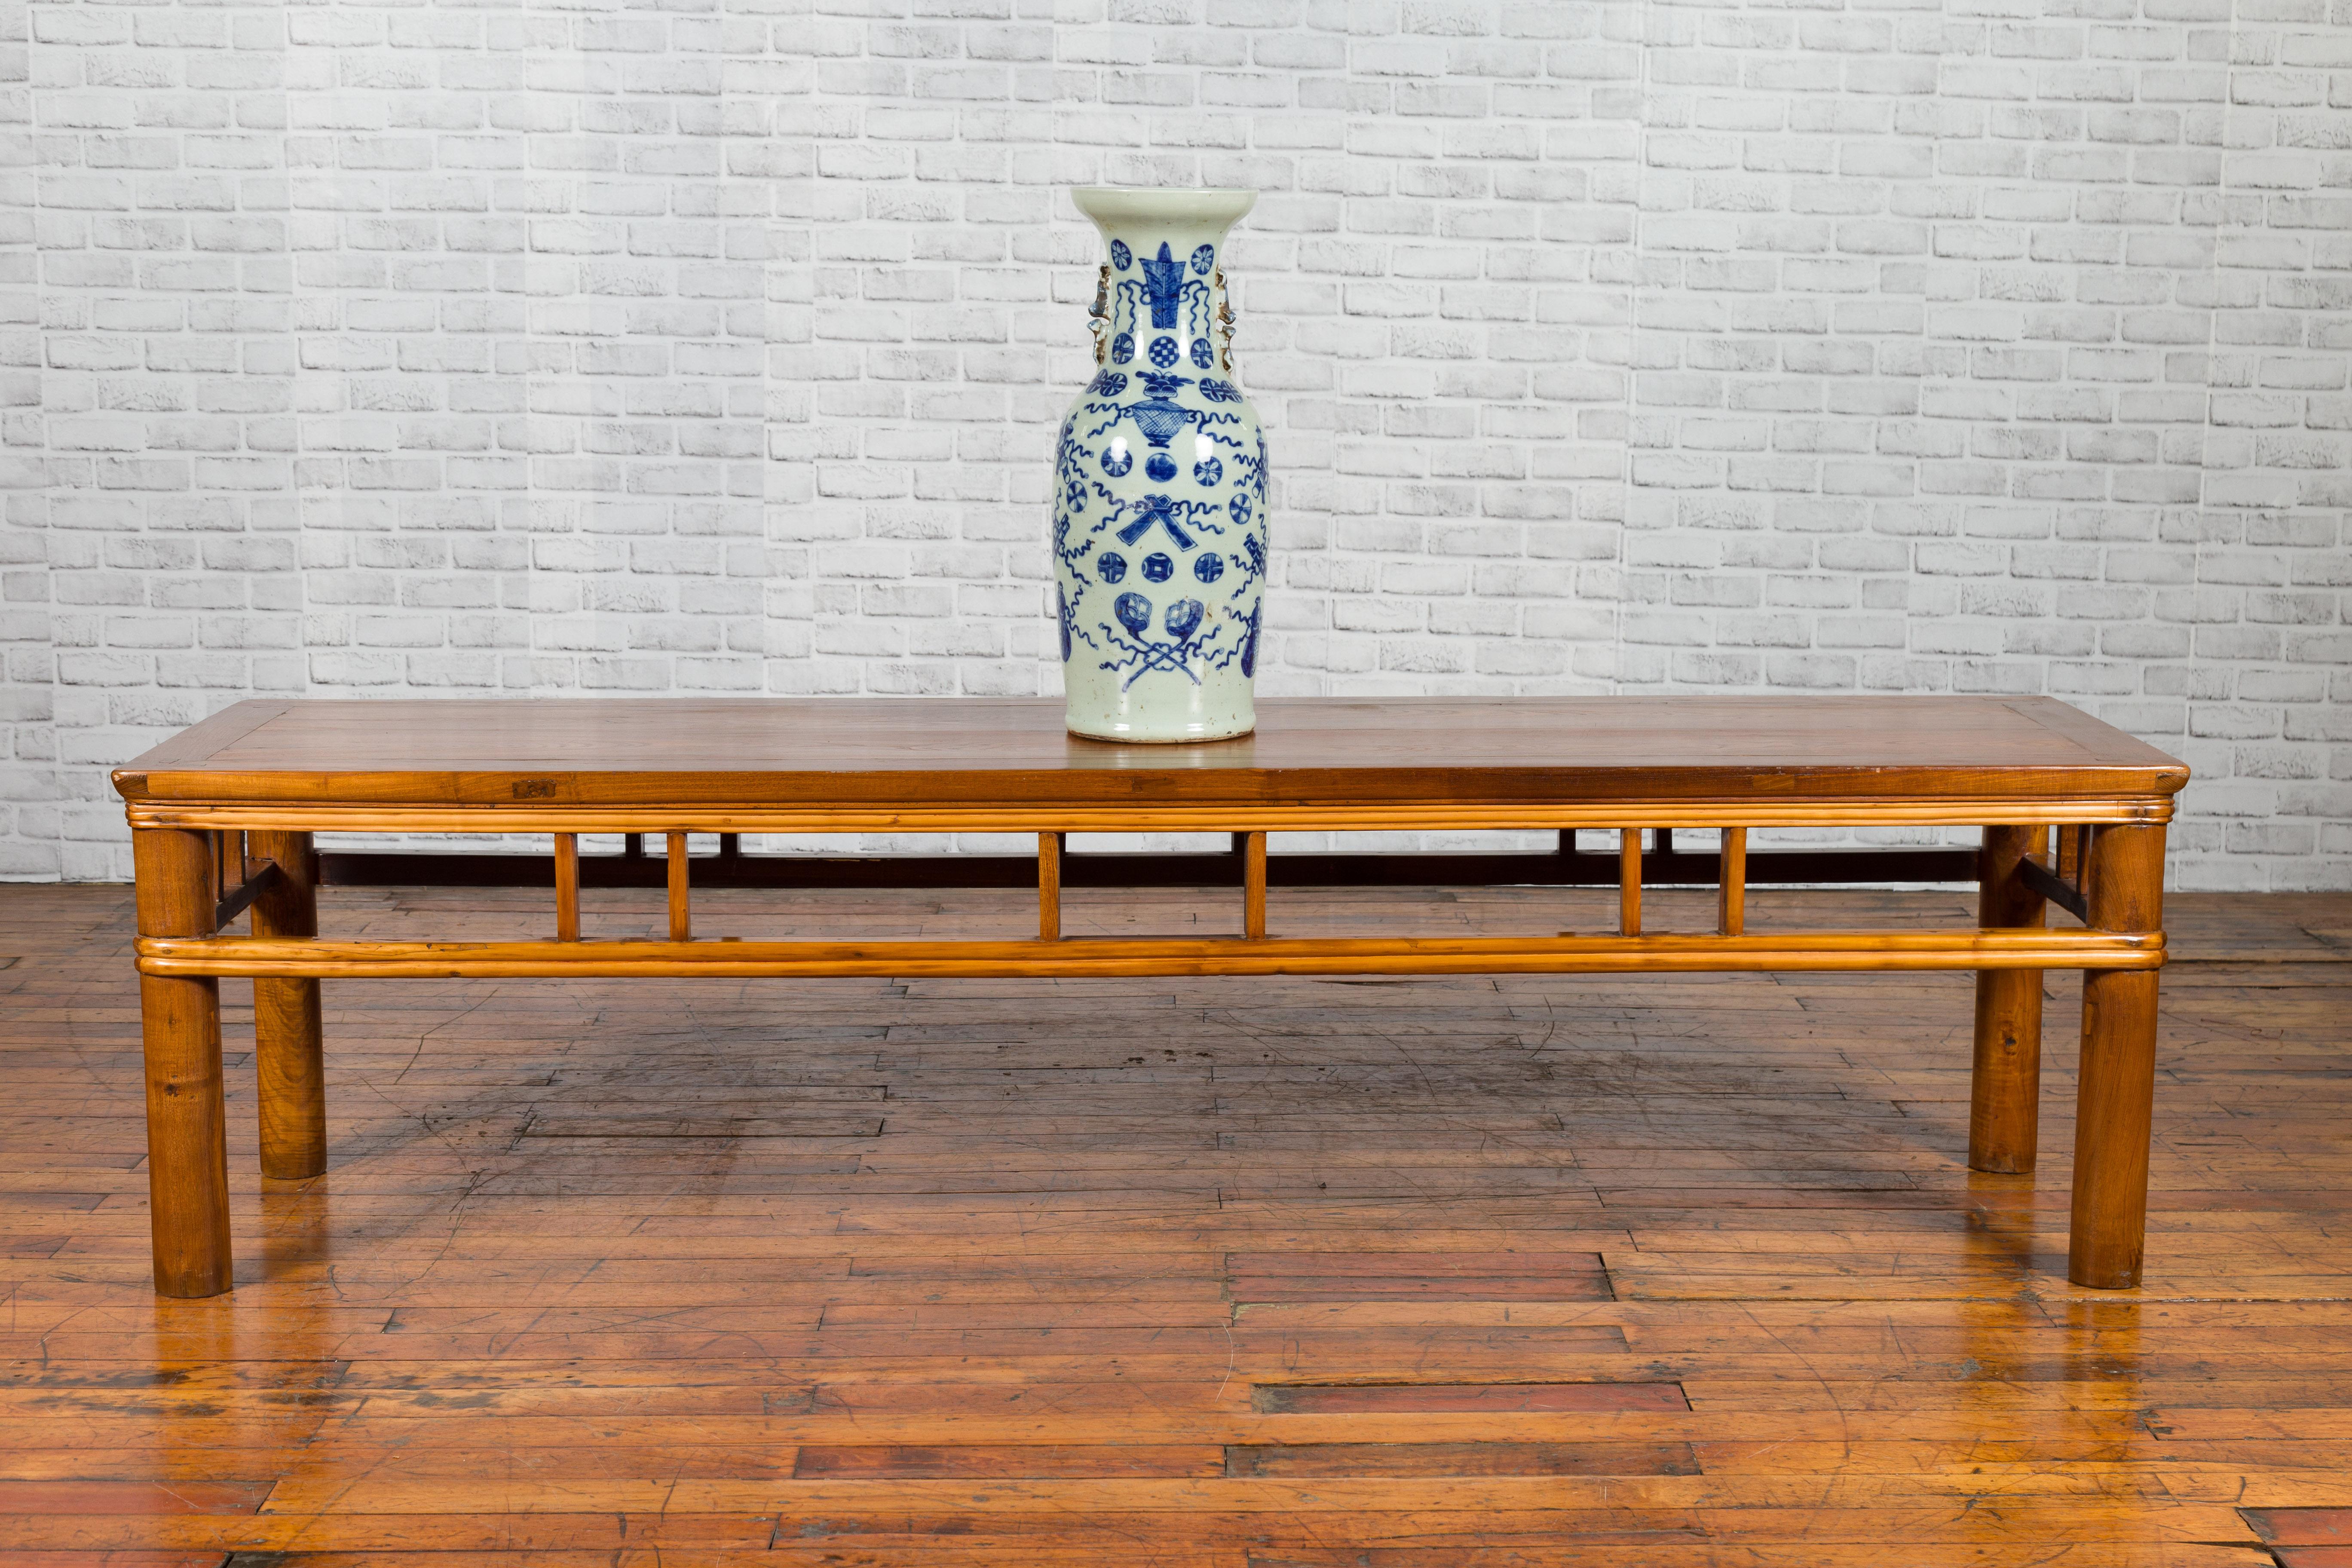 Niedriger chinesischer Tisch aus der späten Qing-Dynastie, Anfang des 20. Jahrhunderts, mit Säulenverstrebungen und zylindrischen Beinen. Dieser niedrige Tisch aus der späten Qing-Dynastie, der wahrscheinlich von einem Altartisch stammt, hat eine